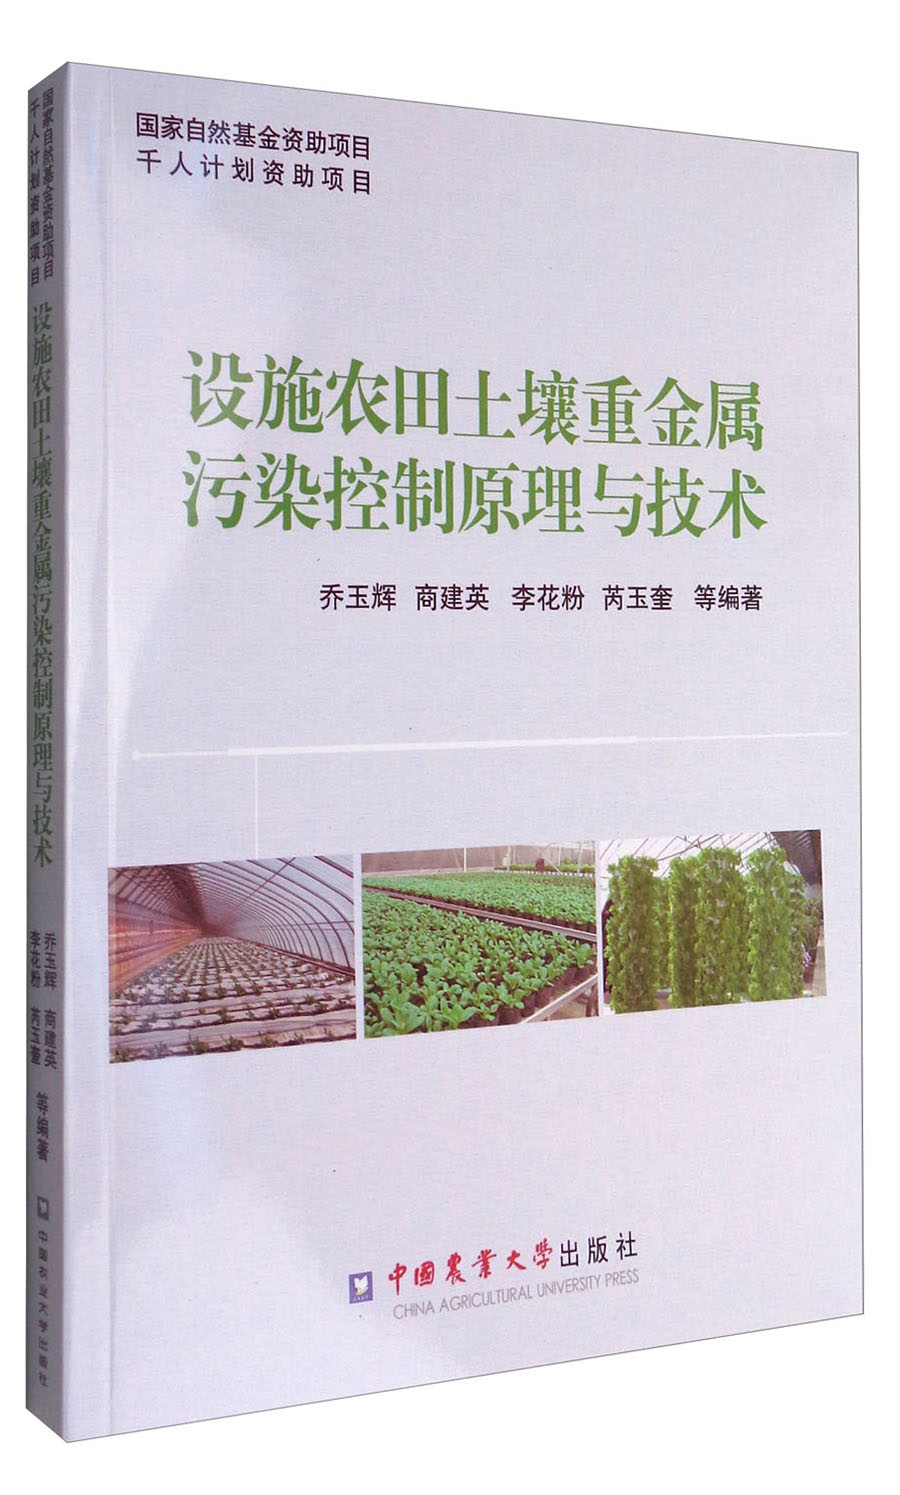 设施农田土壤重金属污染控制原理与技术截图